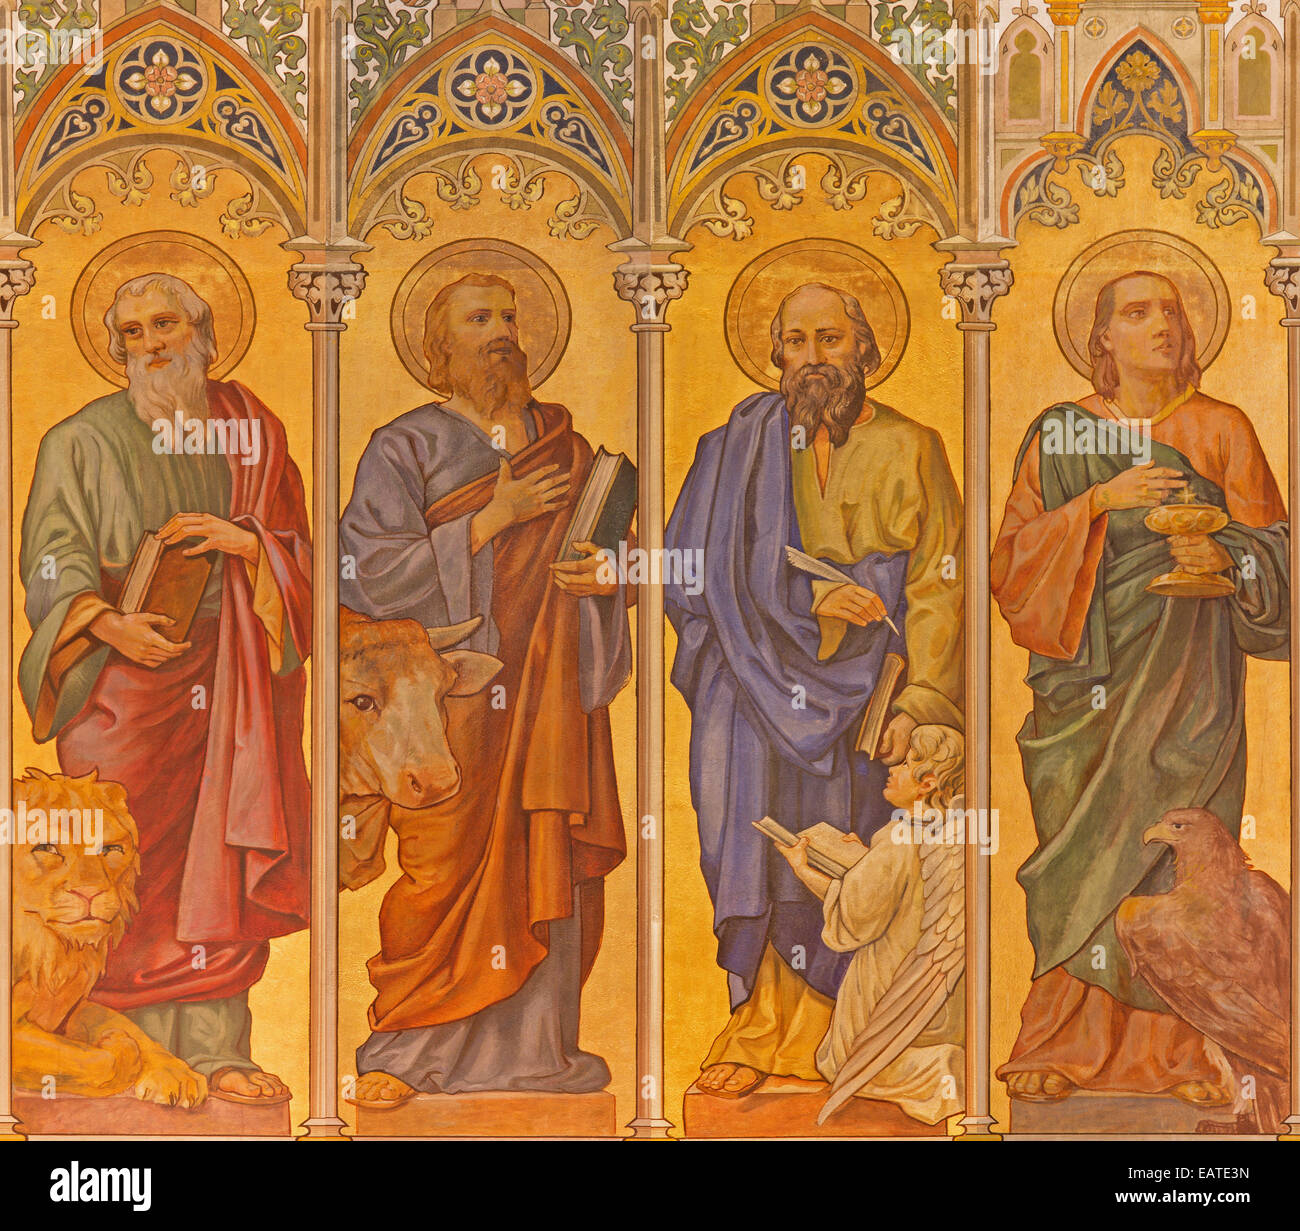 Trnava - Neo-gotischen Fresken der vier Evangelisten (Markus, Lukas, Matthäus, John) in der St. Nikolauskirche. Stockfoto